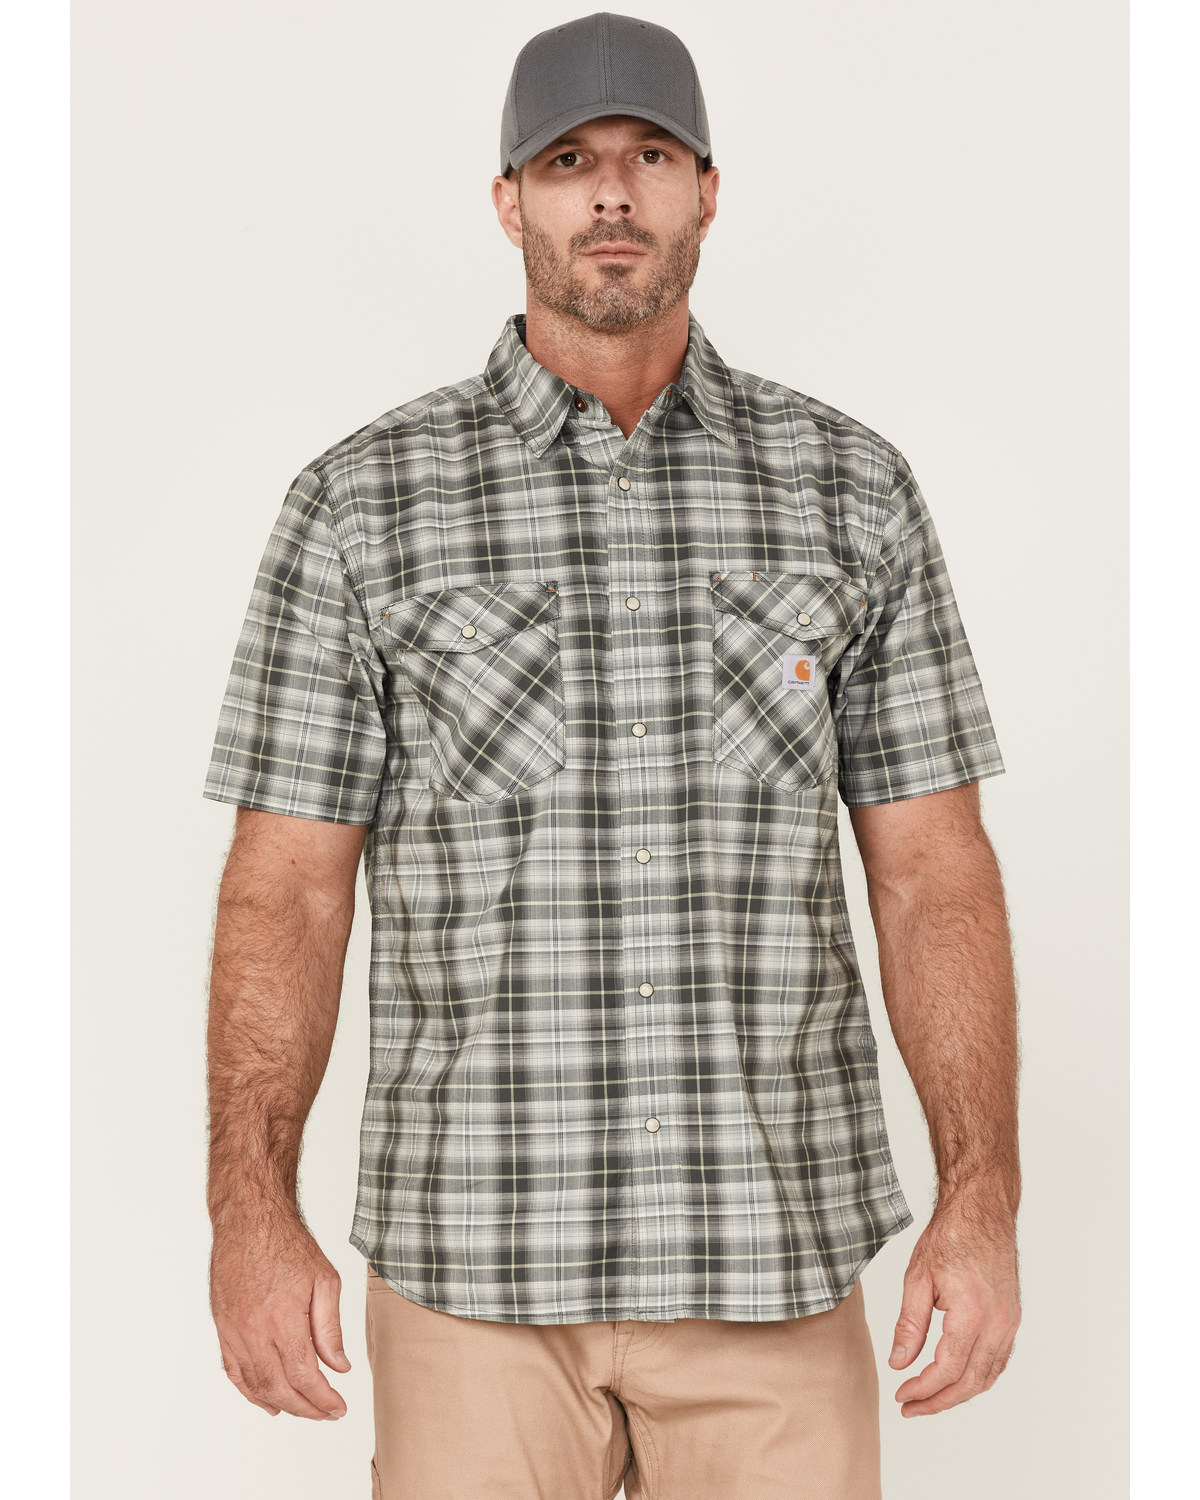 Carhartt Men's Rugged Flex Relaxed Fit Short Sleeve Snap Plaid Shirt